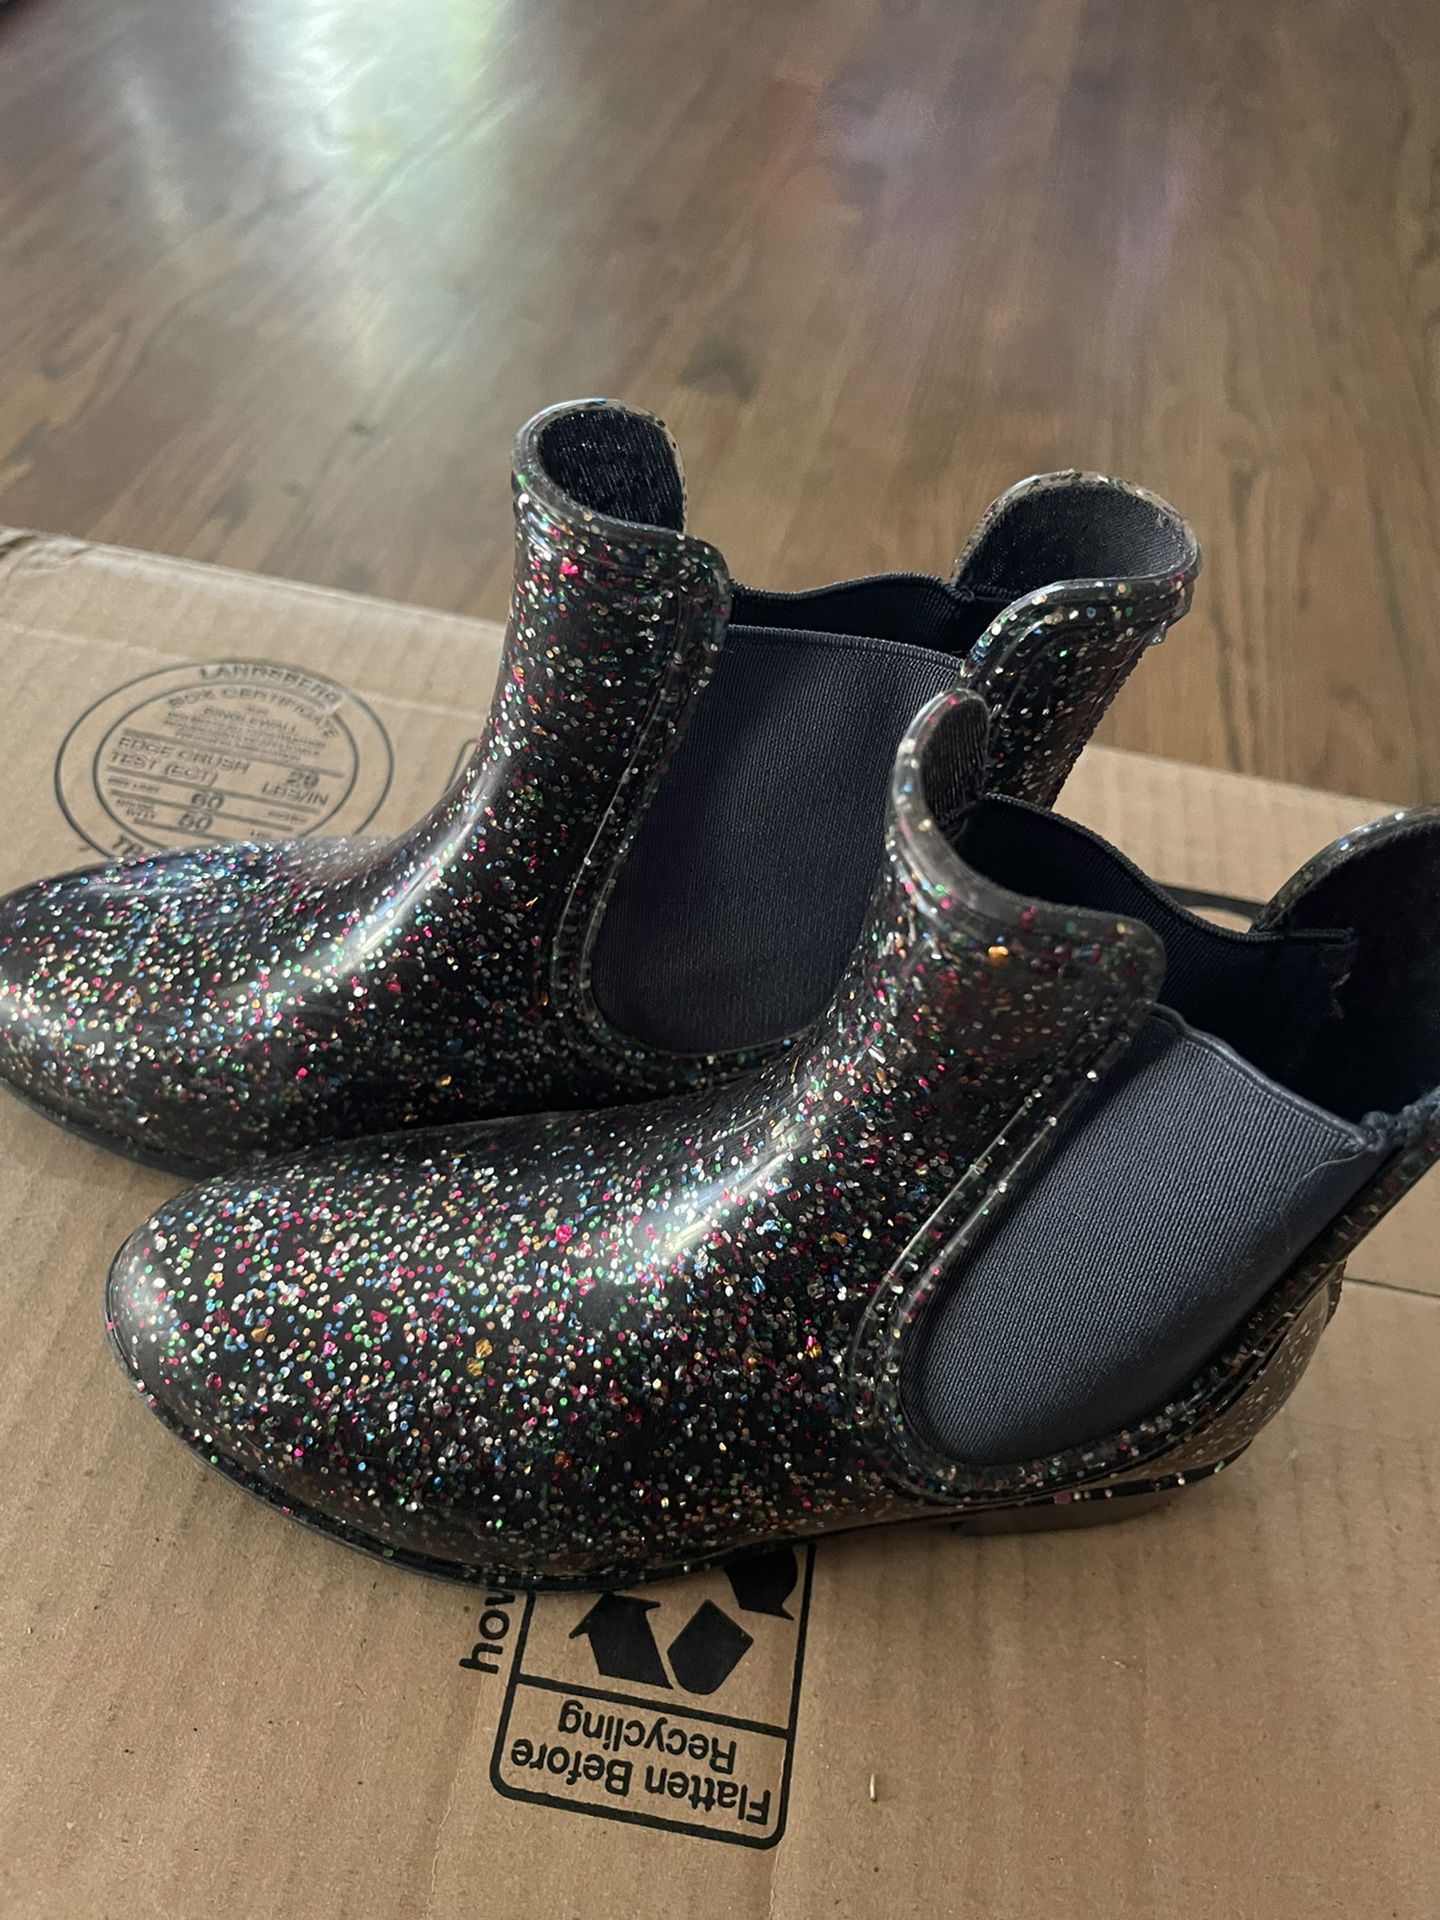 Kids Shoes, Rain Boots, Size 13